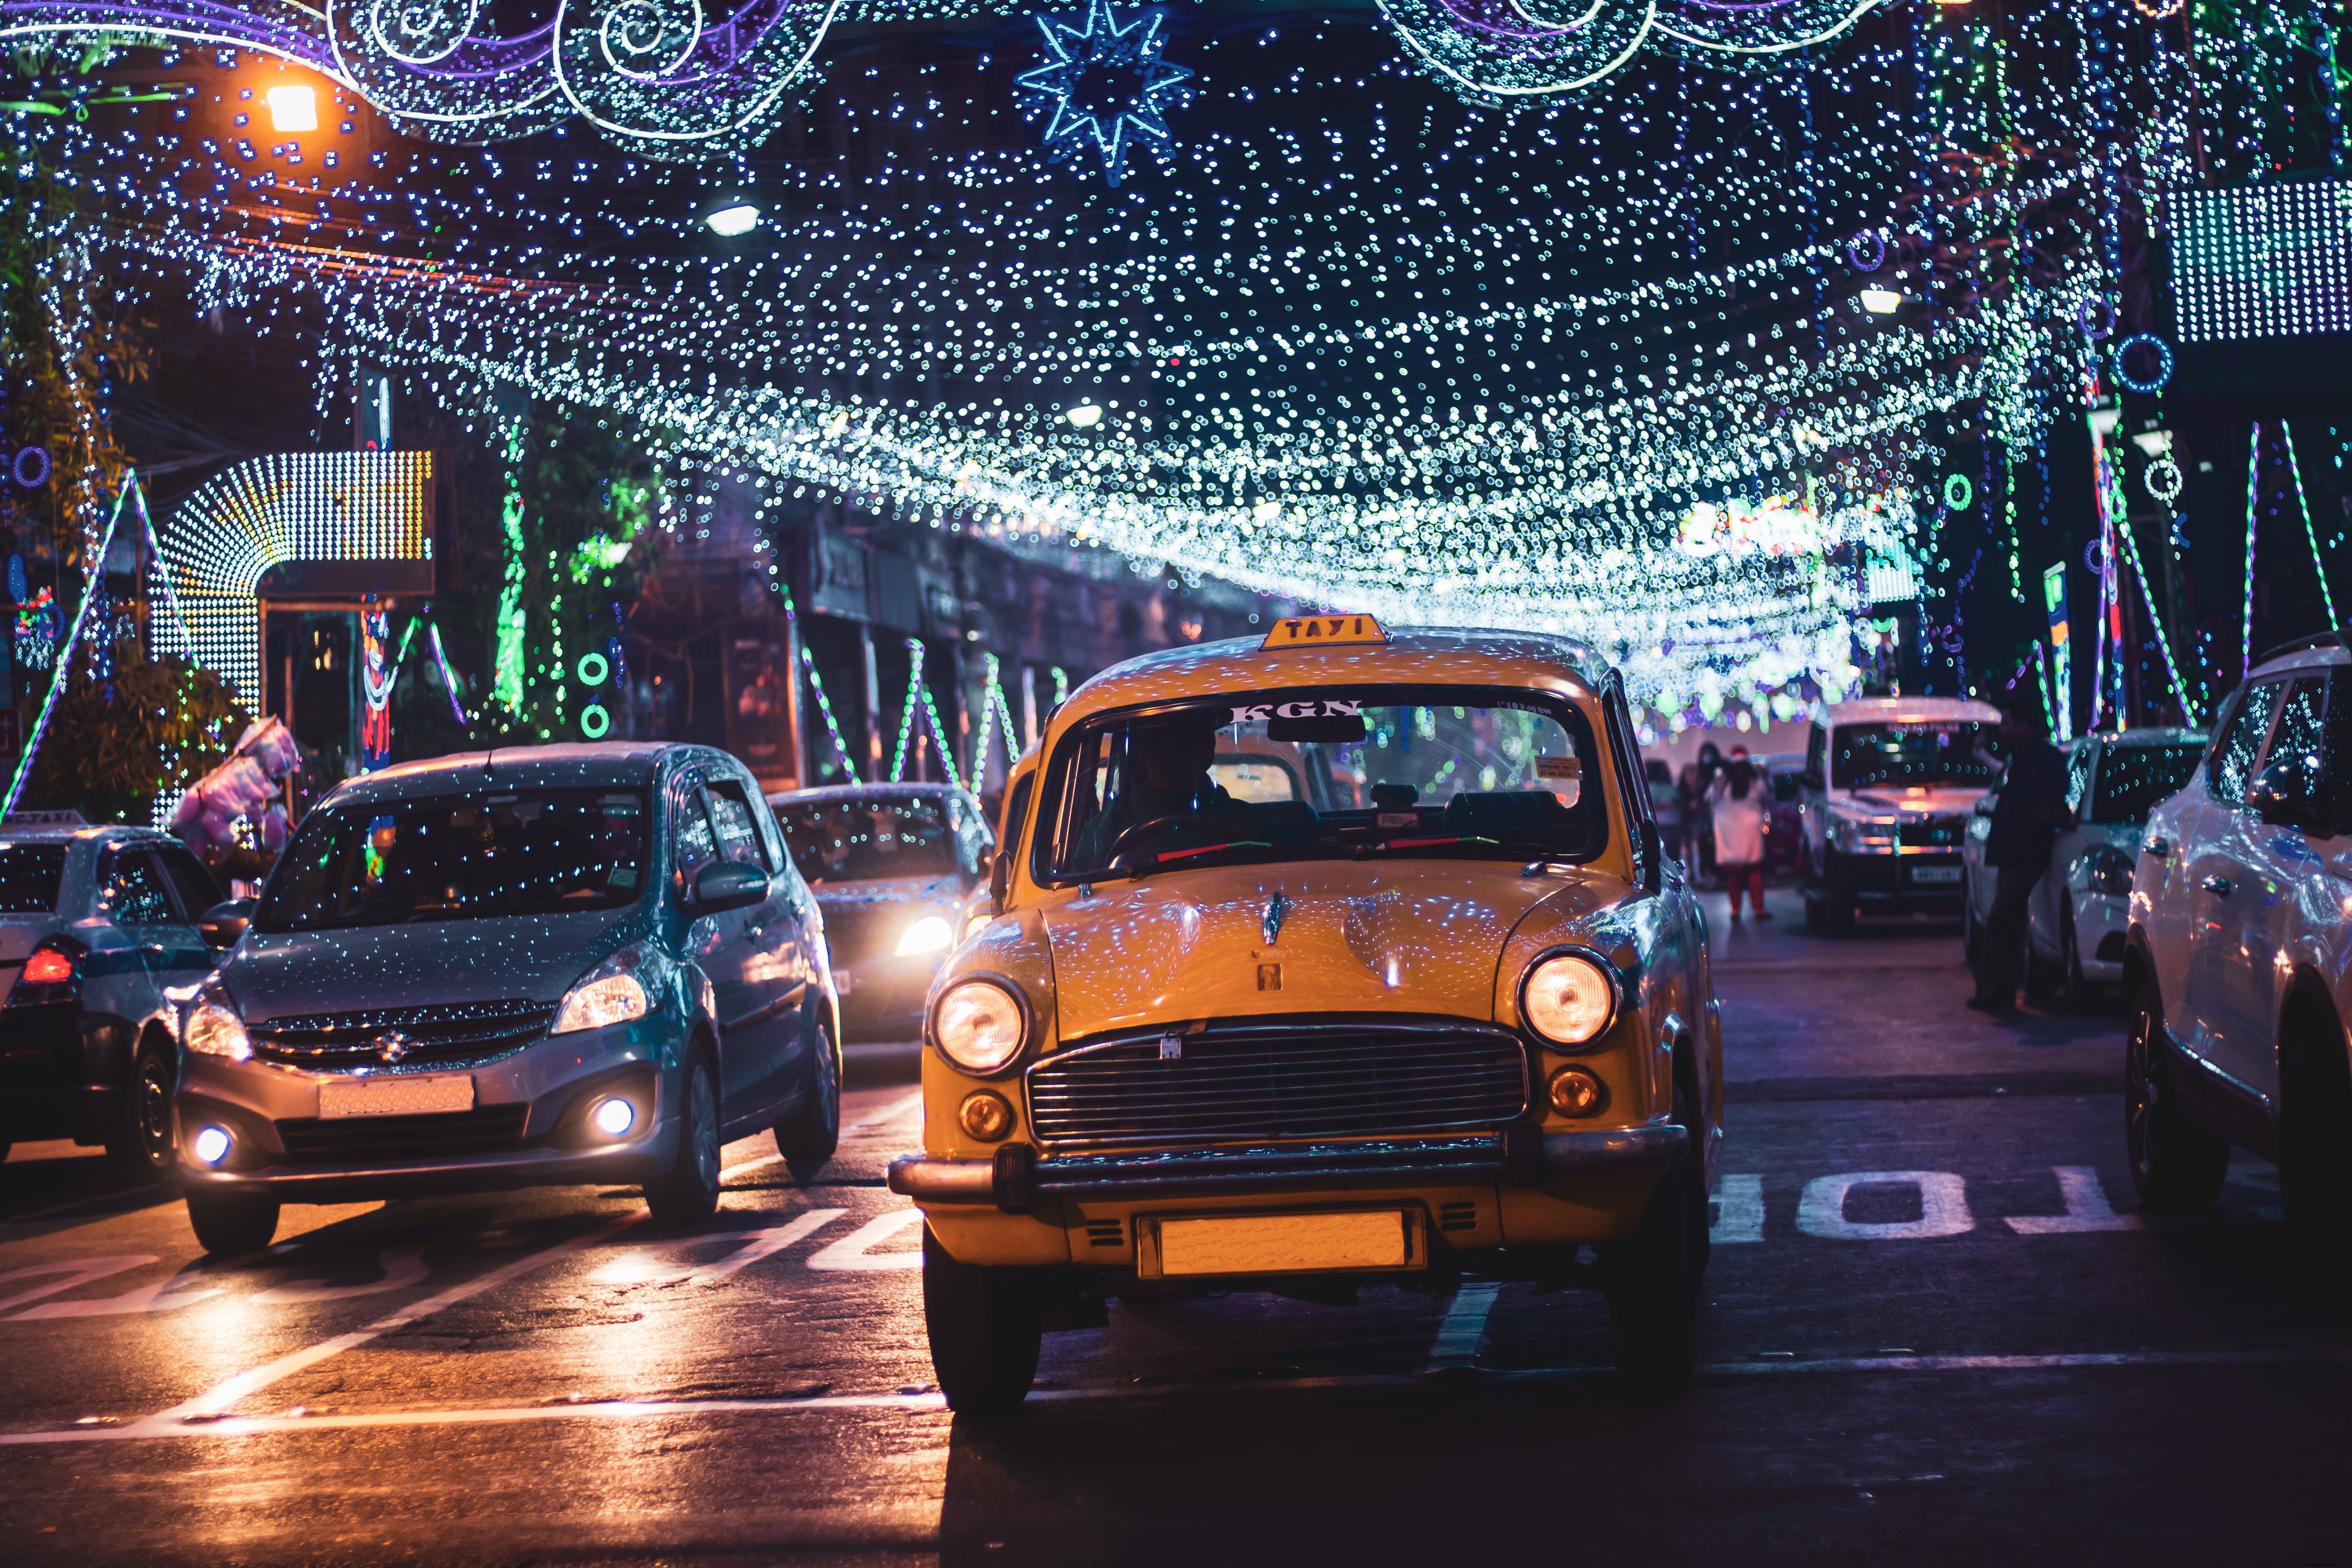 Foto Mobil Di Jalan Kota Yang Menyala Di Malam Hari 